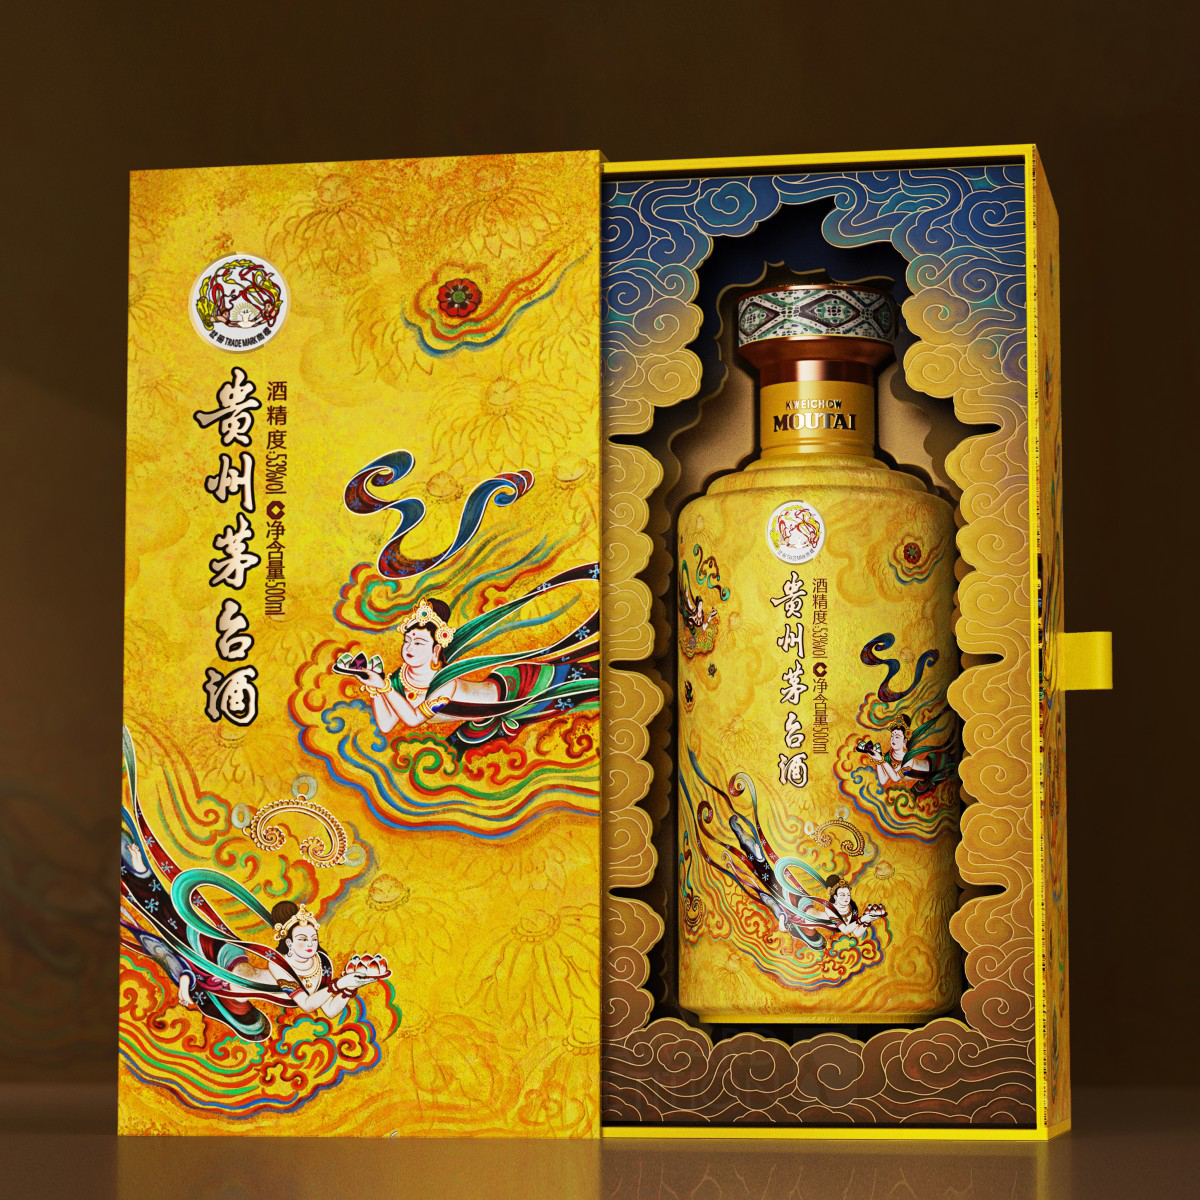 Kweichow Moutai Sanhua Flying Apsaras Baijiu Packaging by Ying Song Brand Design Co   Ltd